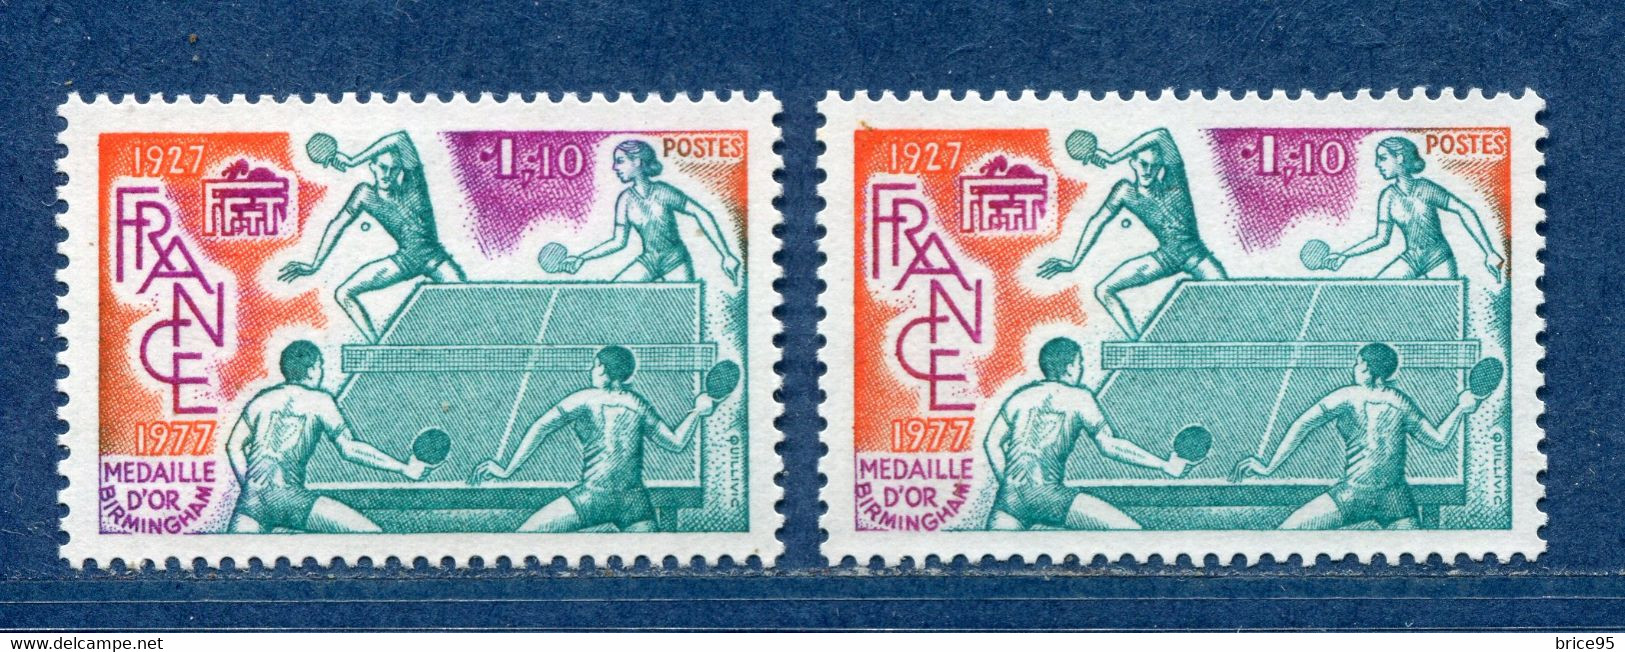 ⭐ France - Variété - YT N° 1961 - Couleurs - Pétouille - Neuf Sans Charnière - 1977 ⭐ - Ungebraucht